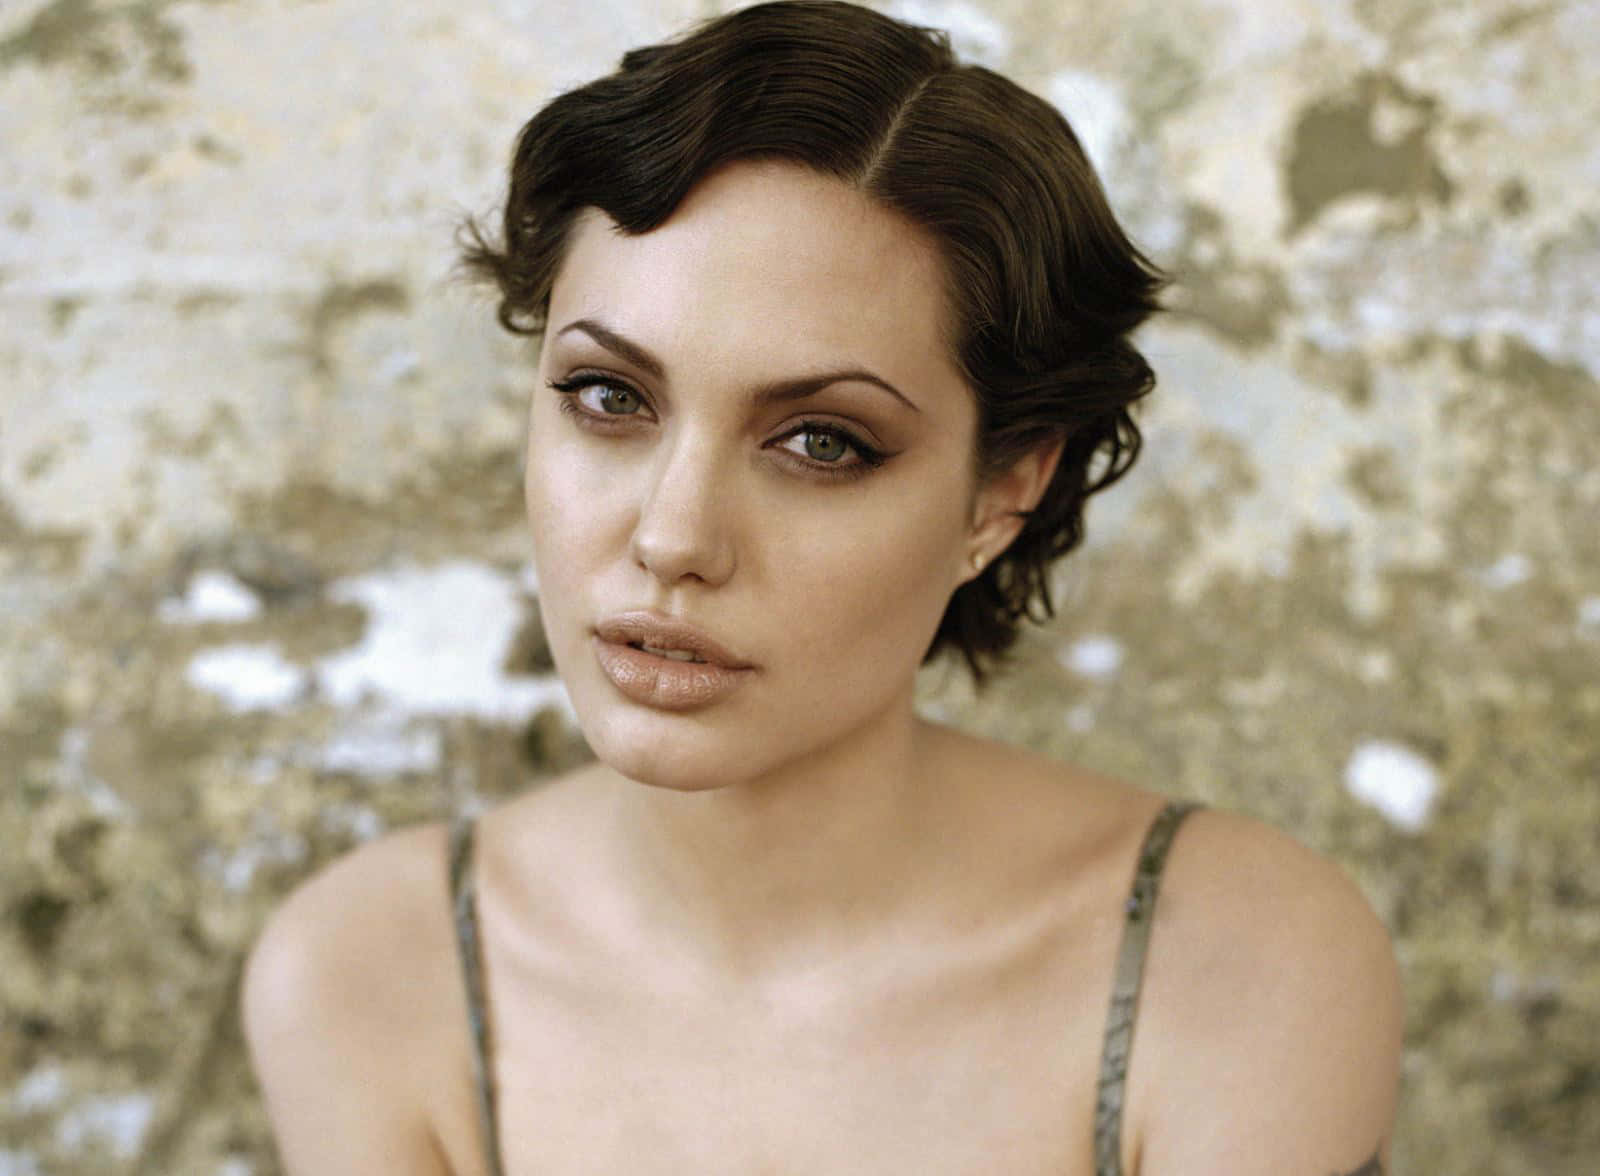 Imagende Angelina Jolie Con Un Estilo De Peinado.